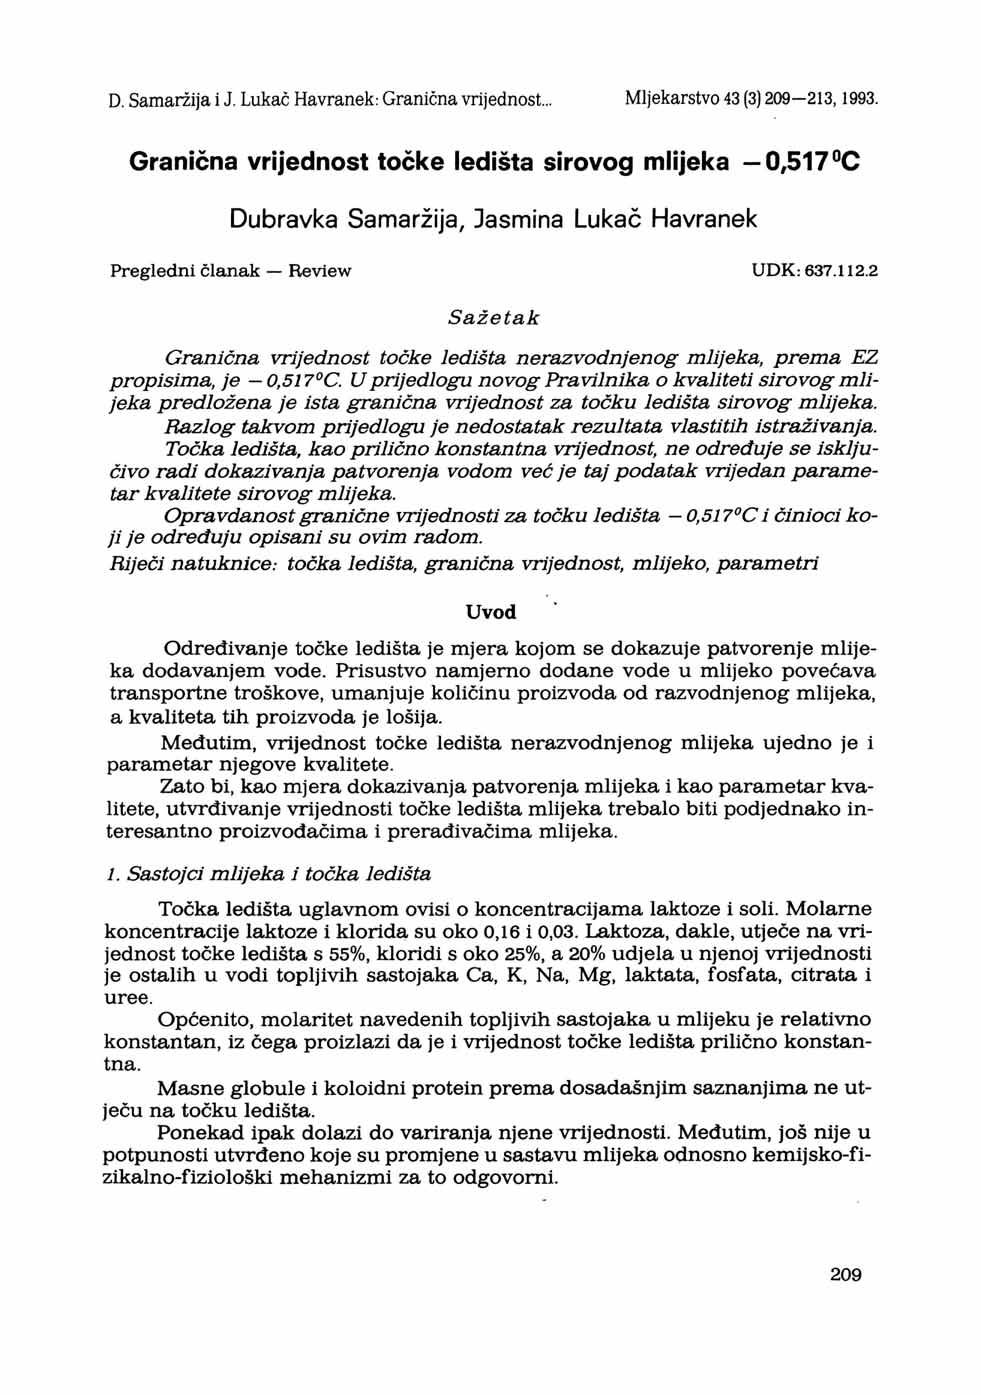 D. Samaržija i J. Lukač Havranek: Granična vrijednost... Mljekarstvo 43 (3) 209-213,1993.